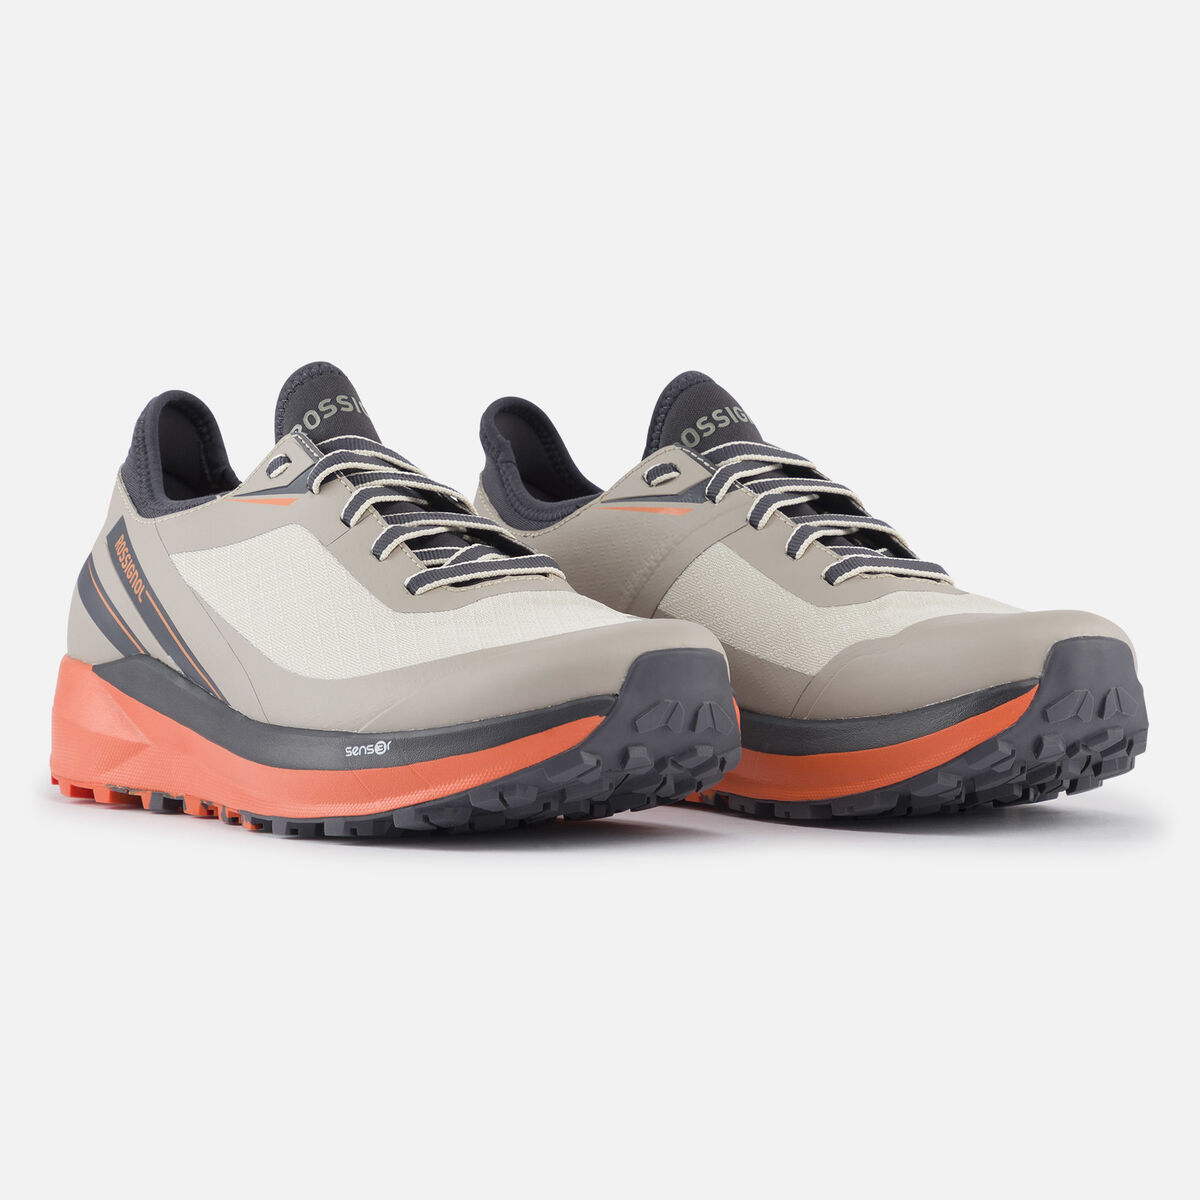 Rossignol Women's khaki waterproof Active outdoor shoes grey